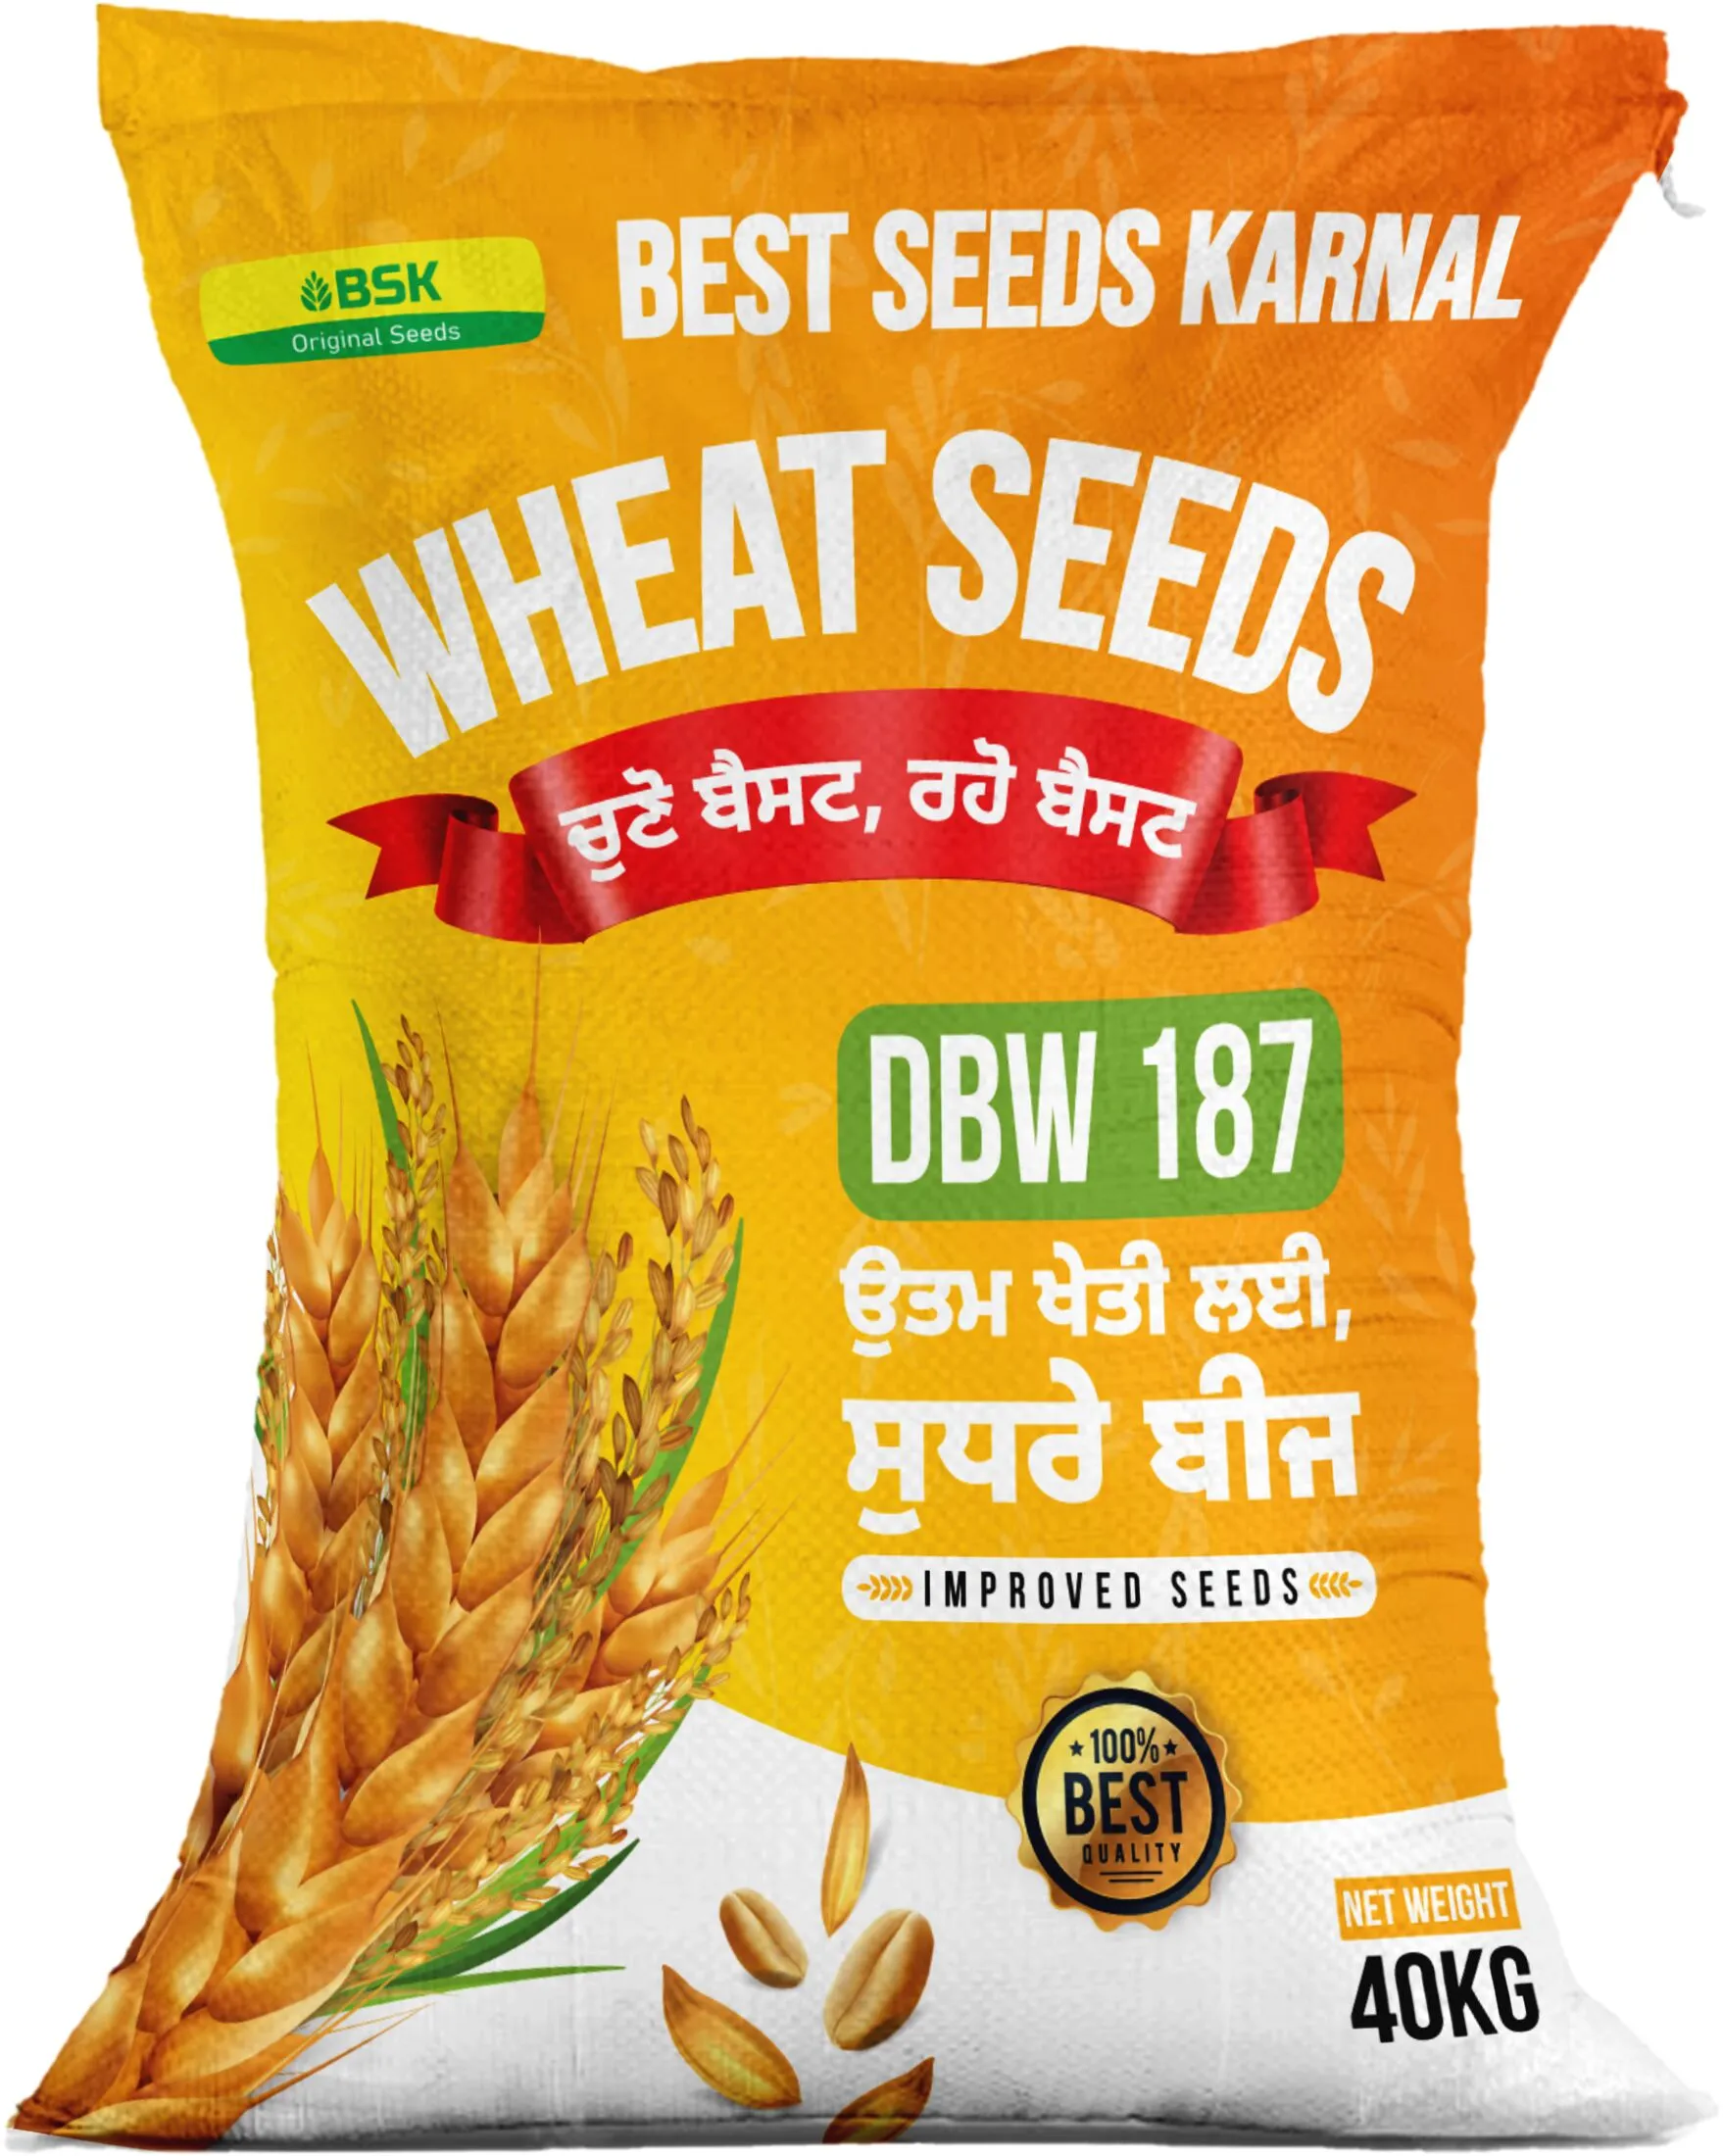 DBW 187  high yielding wheat variety from Best seeds Karanl